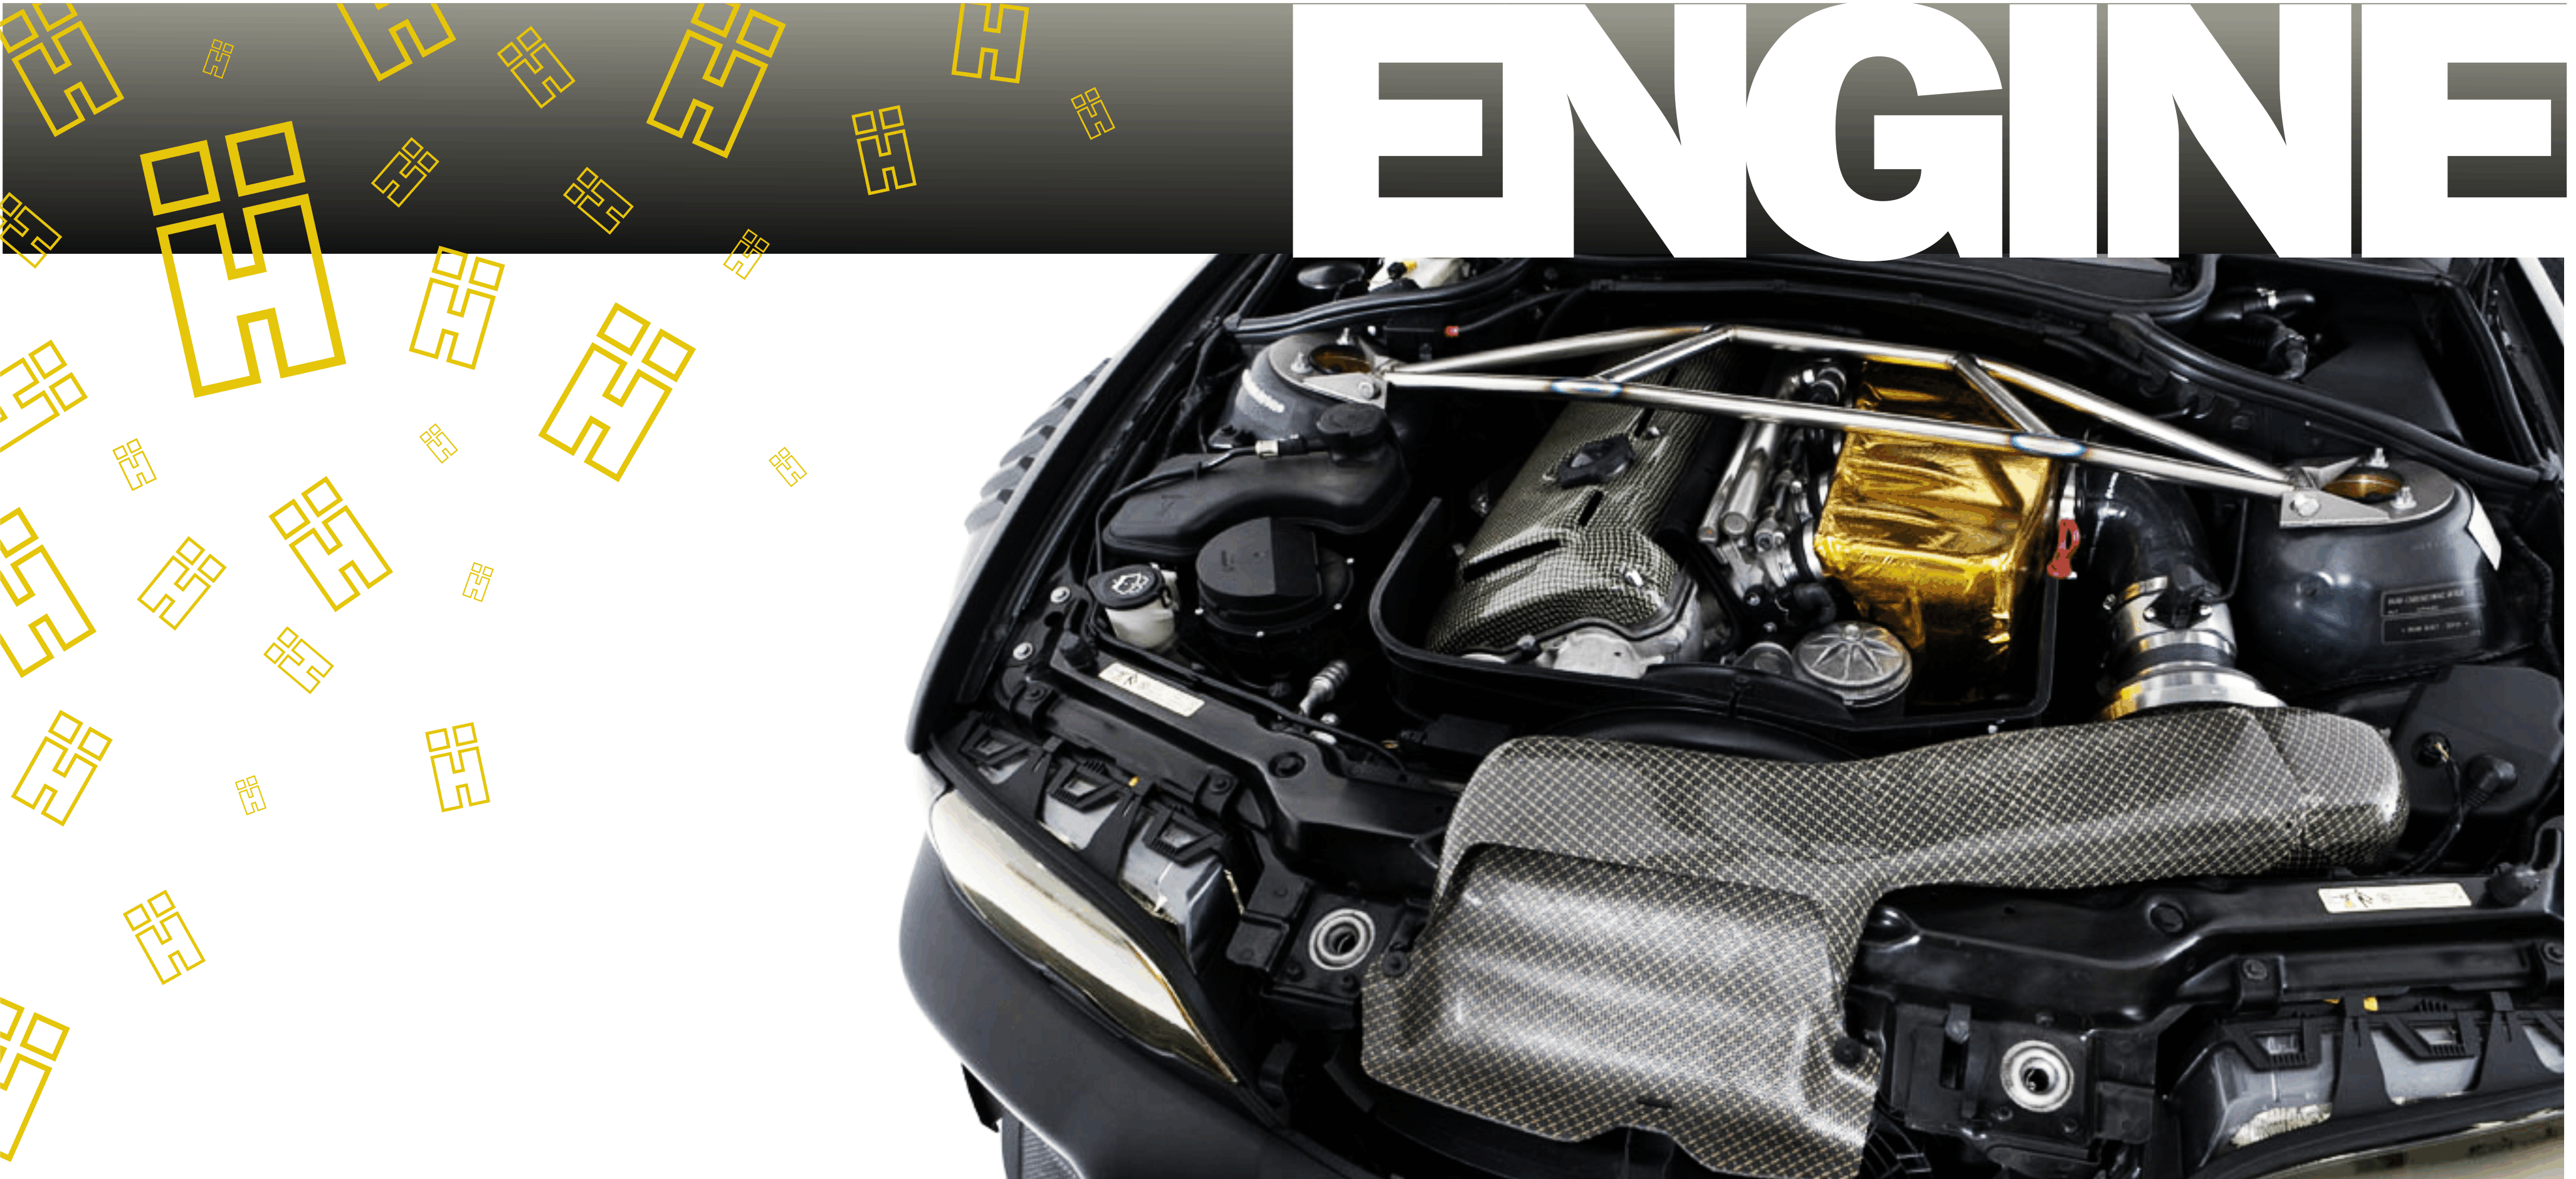 E46 E36 E90 E92 Engine performance racing parts track